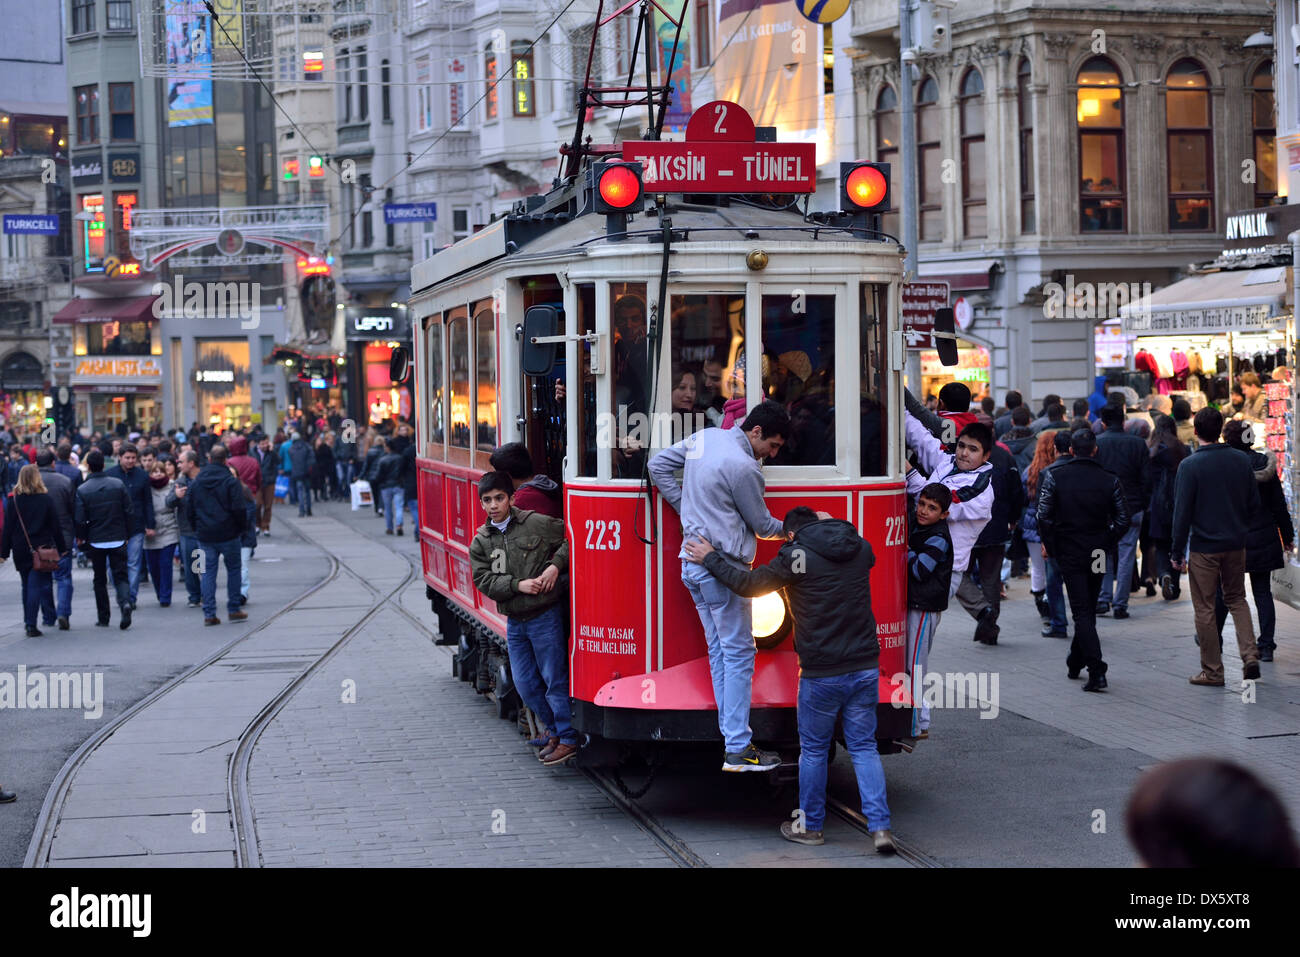 ISTANBUL, TURKEY - JANUARY 12: People walking on Istiklal Street on January 12, 2014 in Istanbul, Turkey. Stock Photo